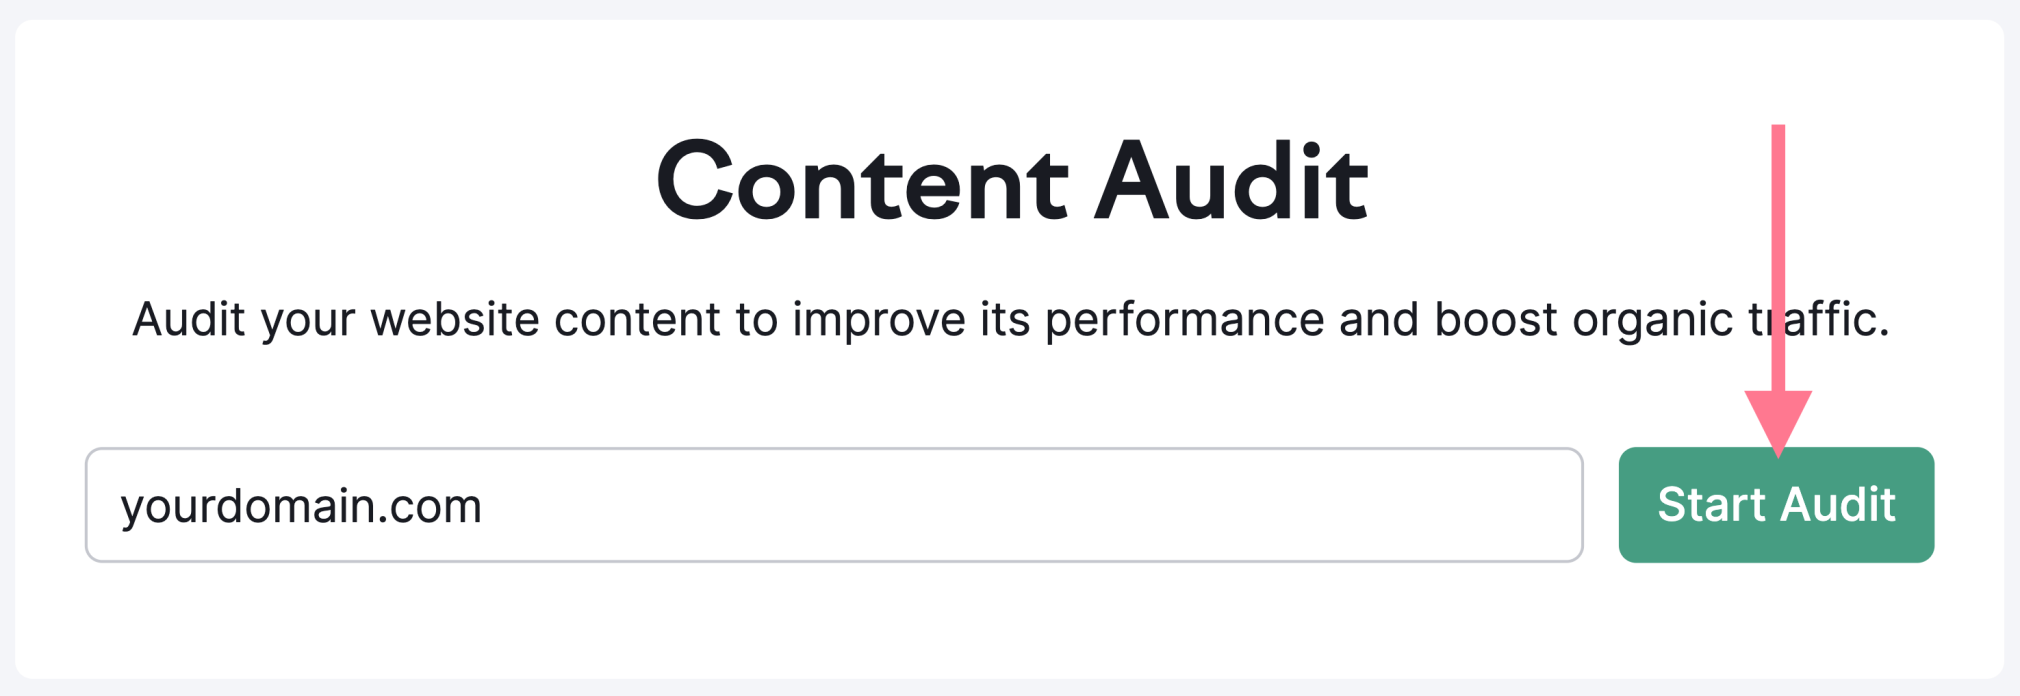 content audit tool